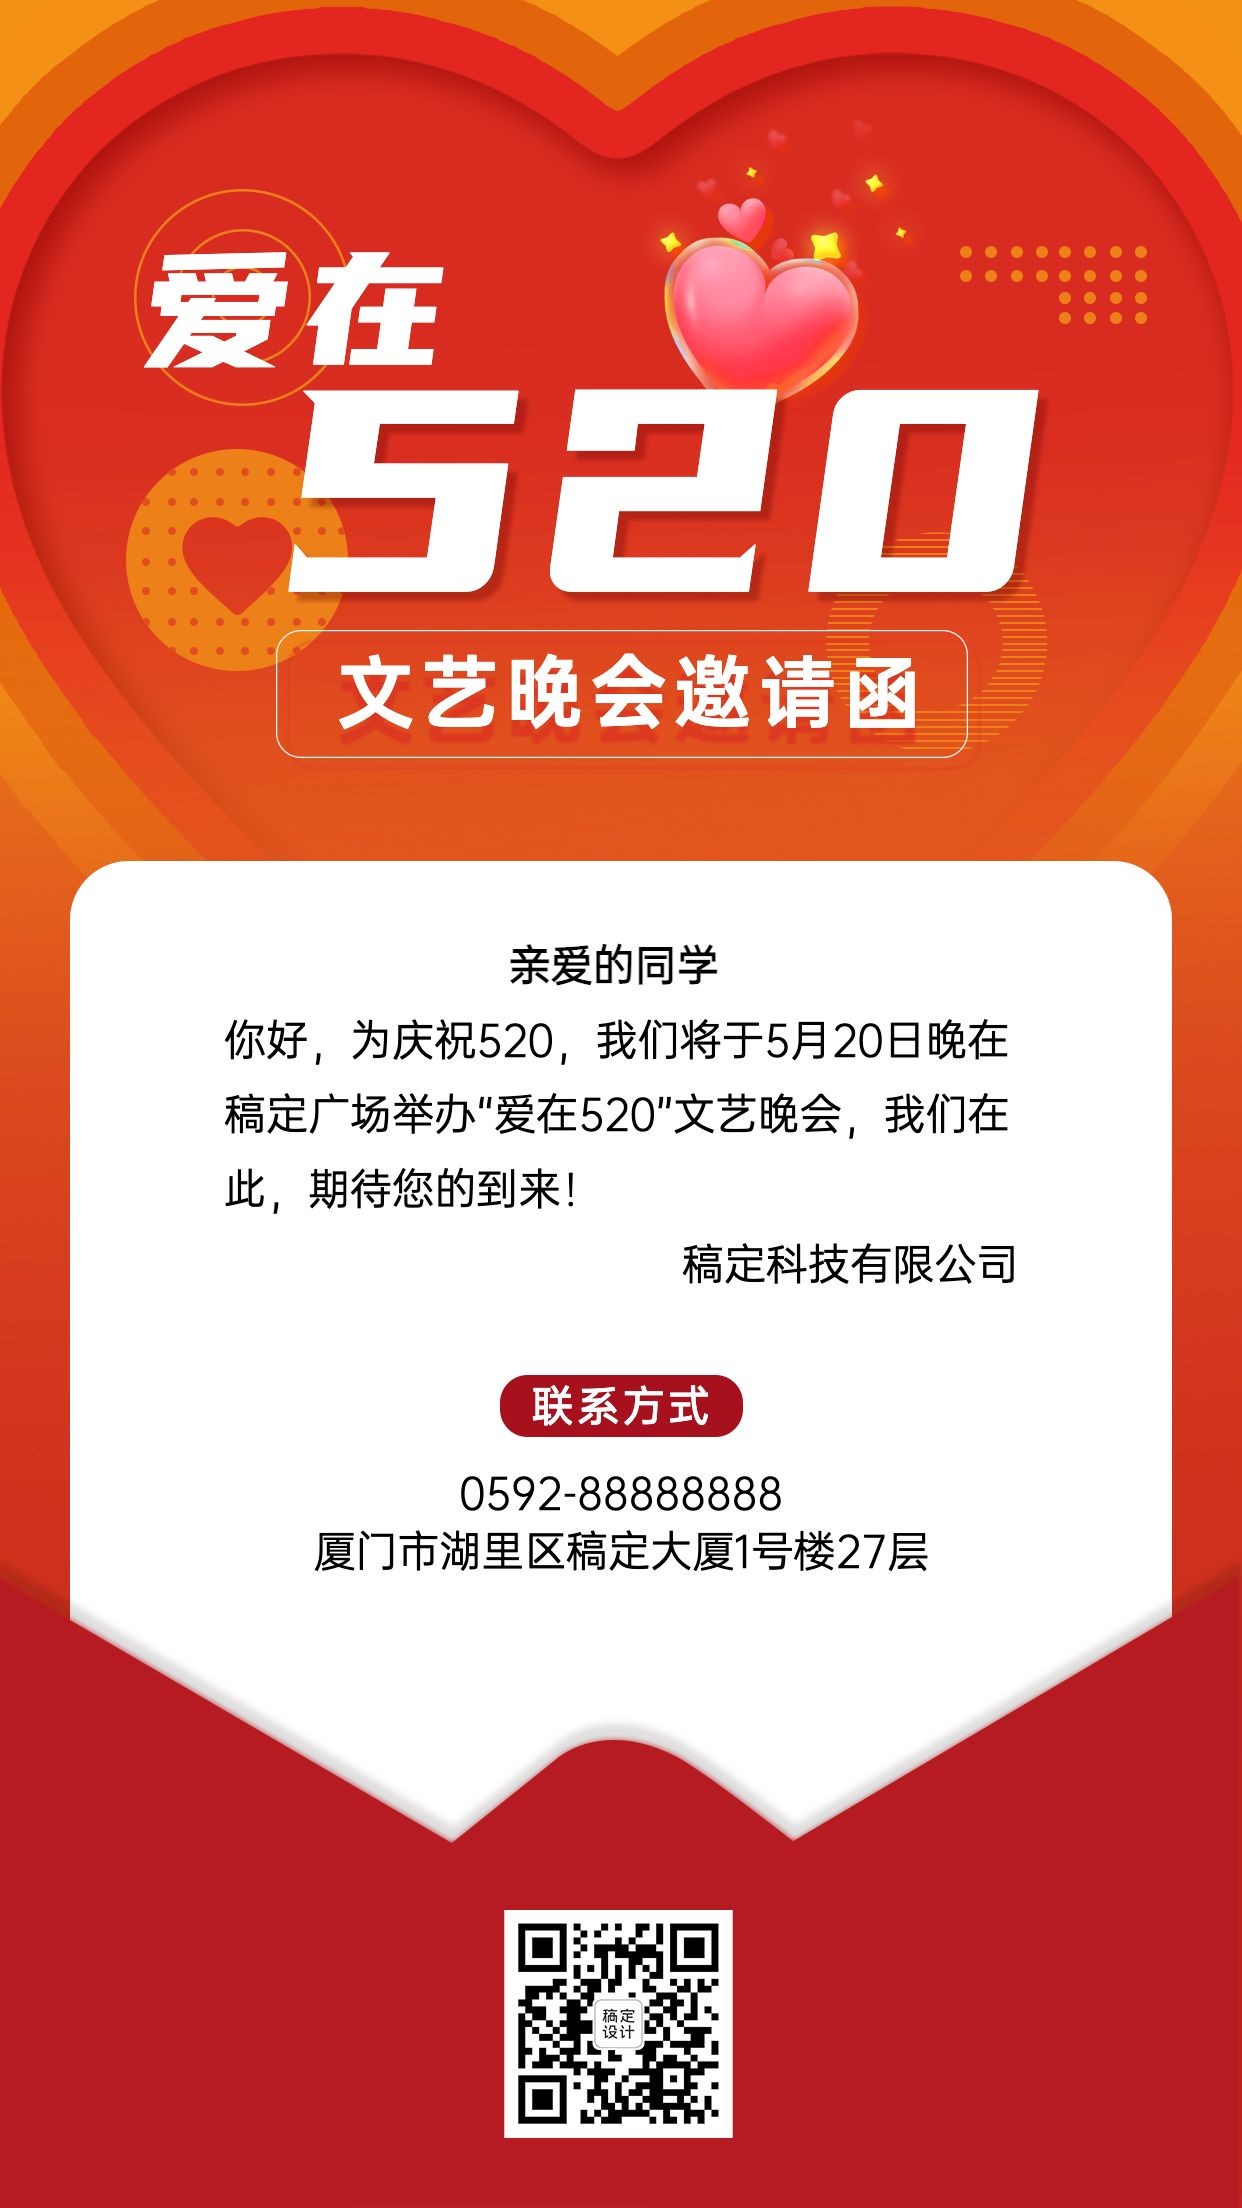 520情人节节日活动晚会邀请函排版手机海报预览效果